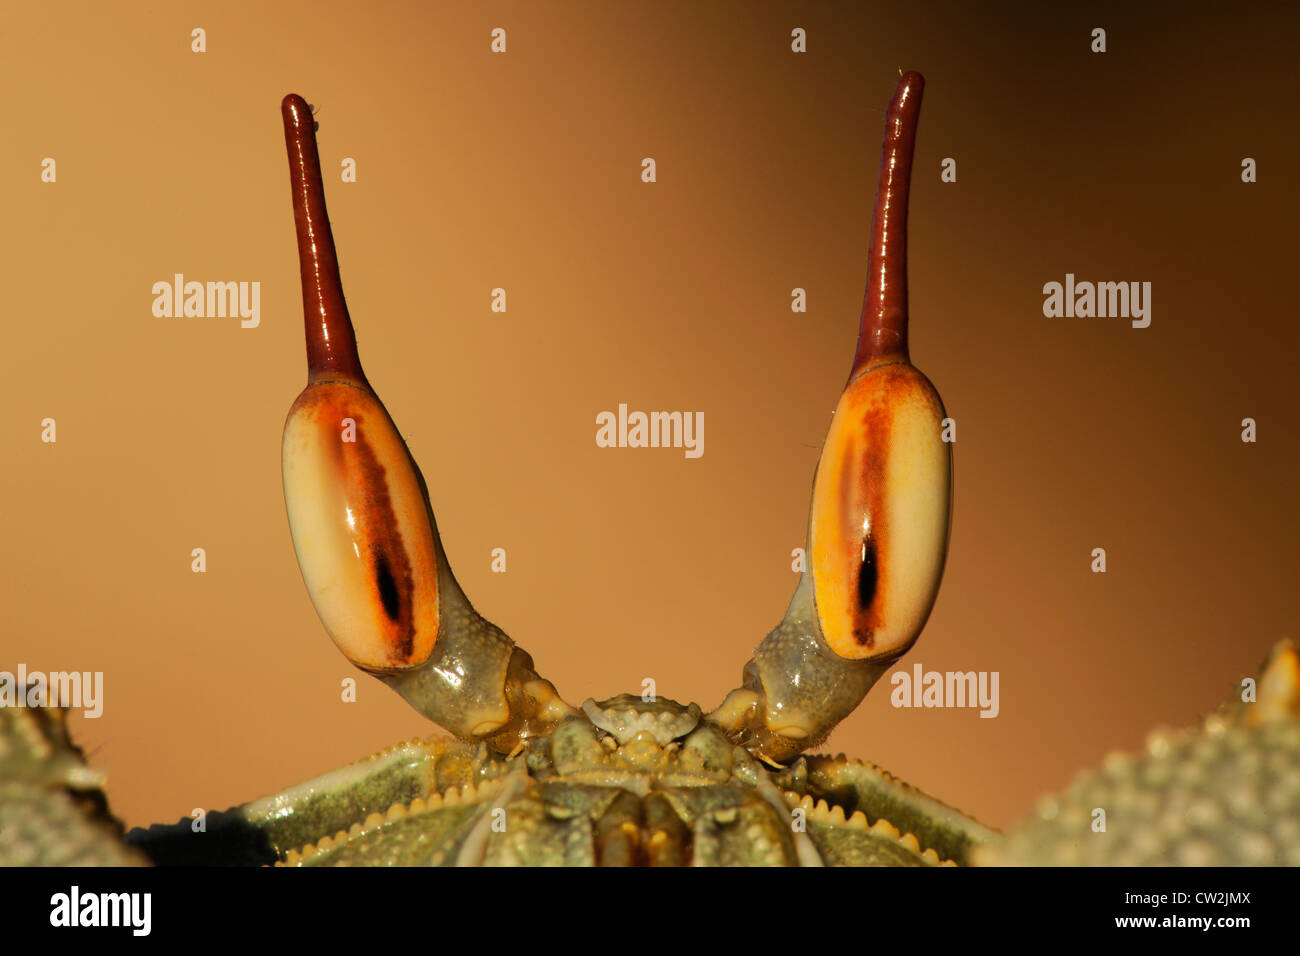 Le crabe fantôme cornu (Ocypode) ceratopthalnus Seychelles.Dist. Les îles tropicales et des océans dans le monde entier. Banque D'Images